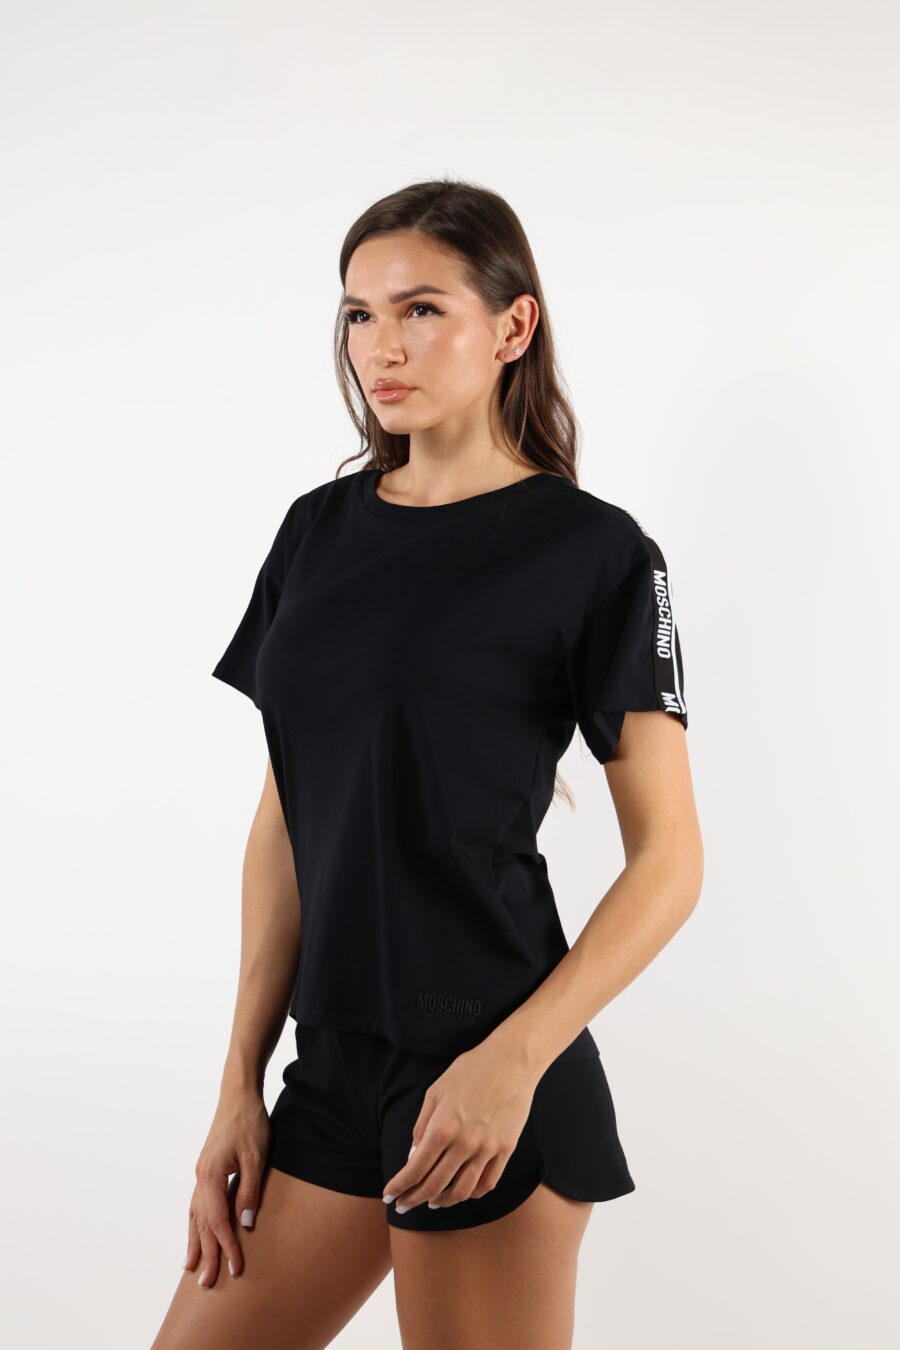 Camiseta negra corta con logo en cinta hombros blanco - 110496